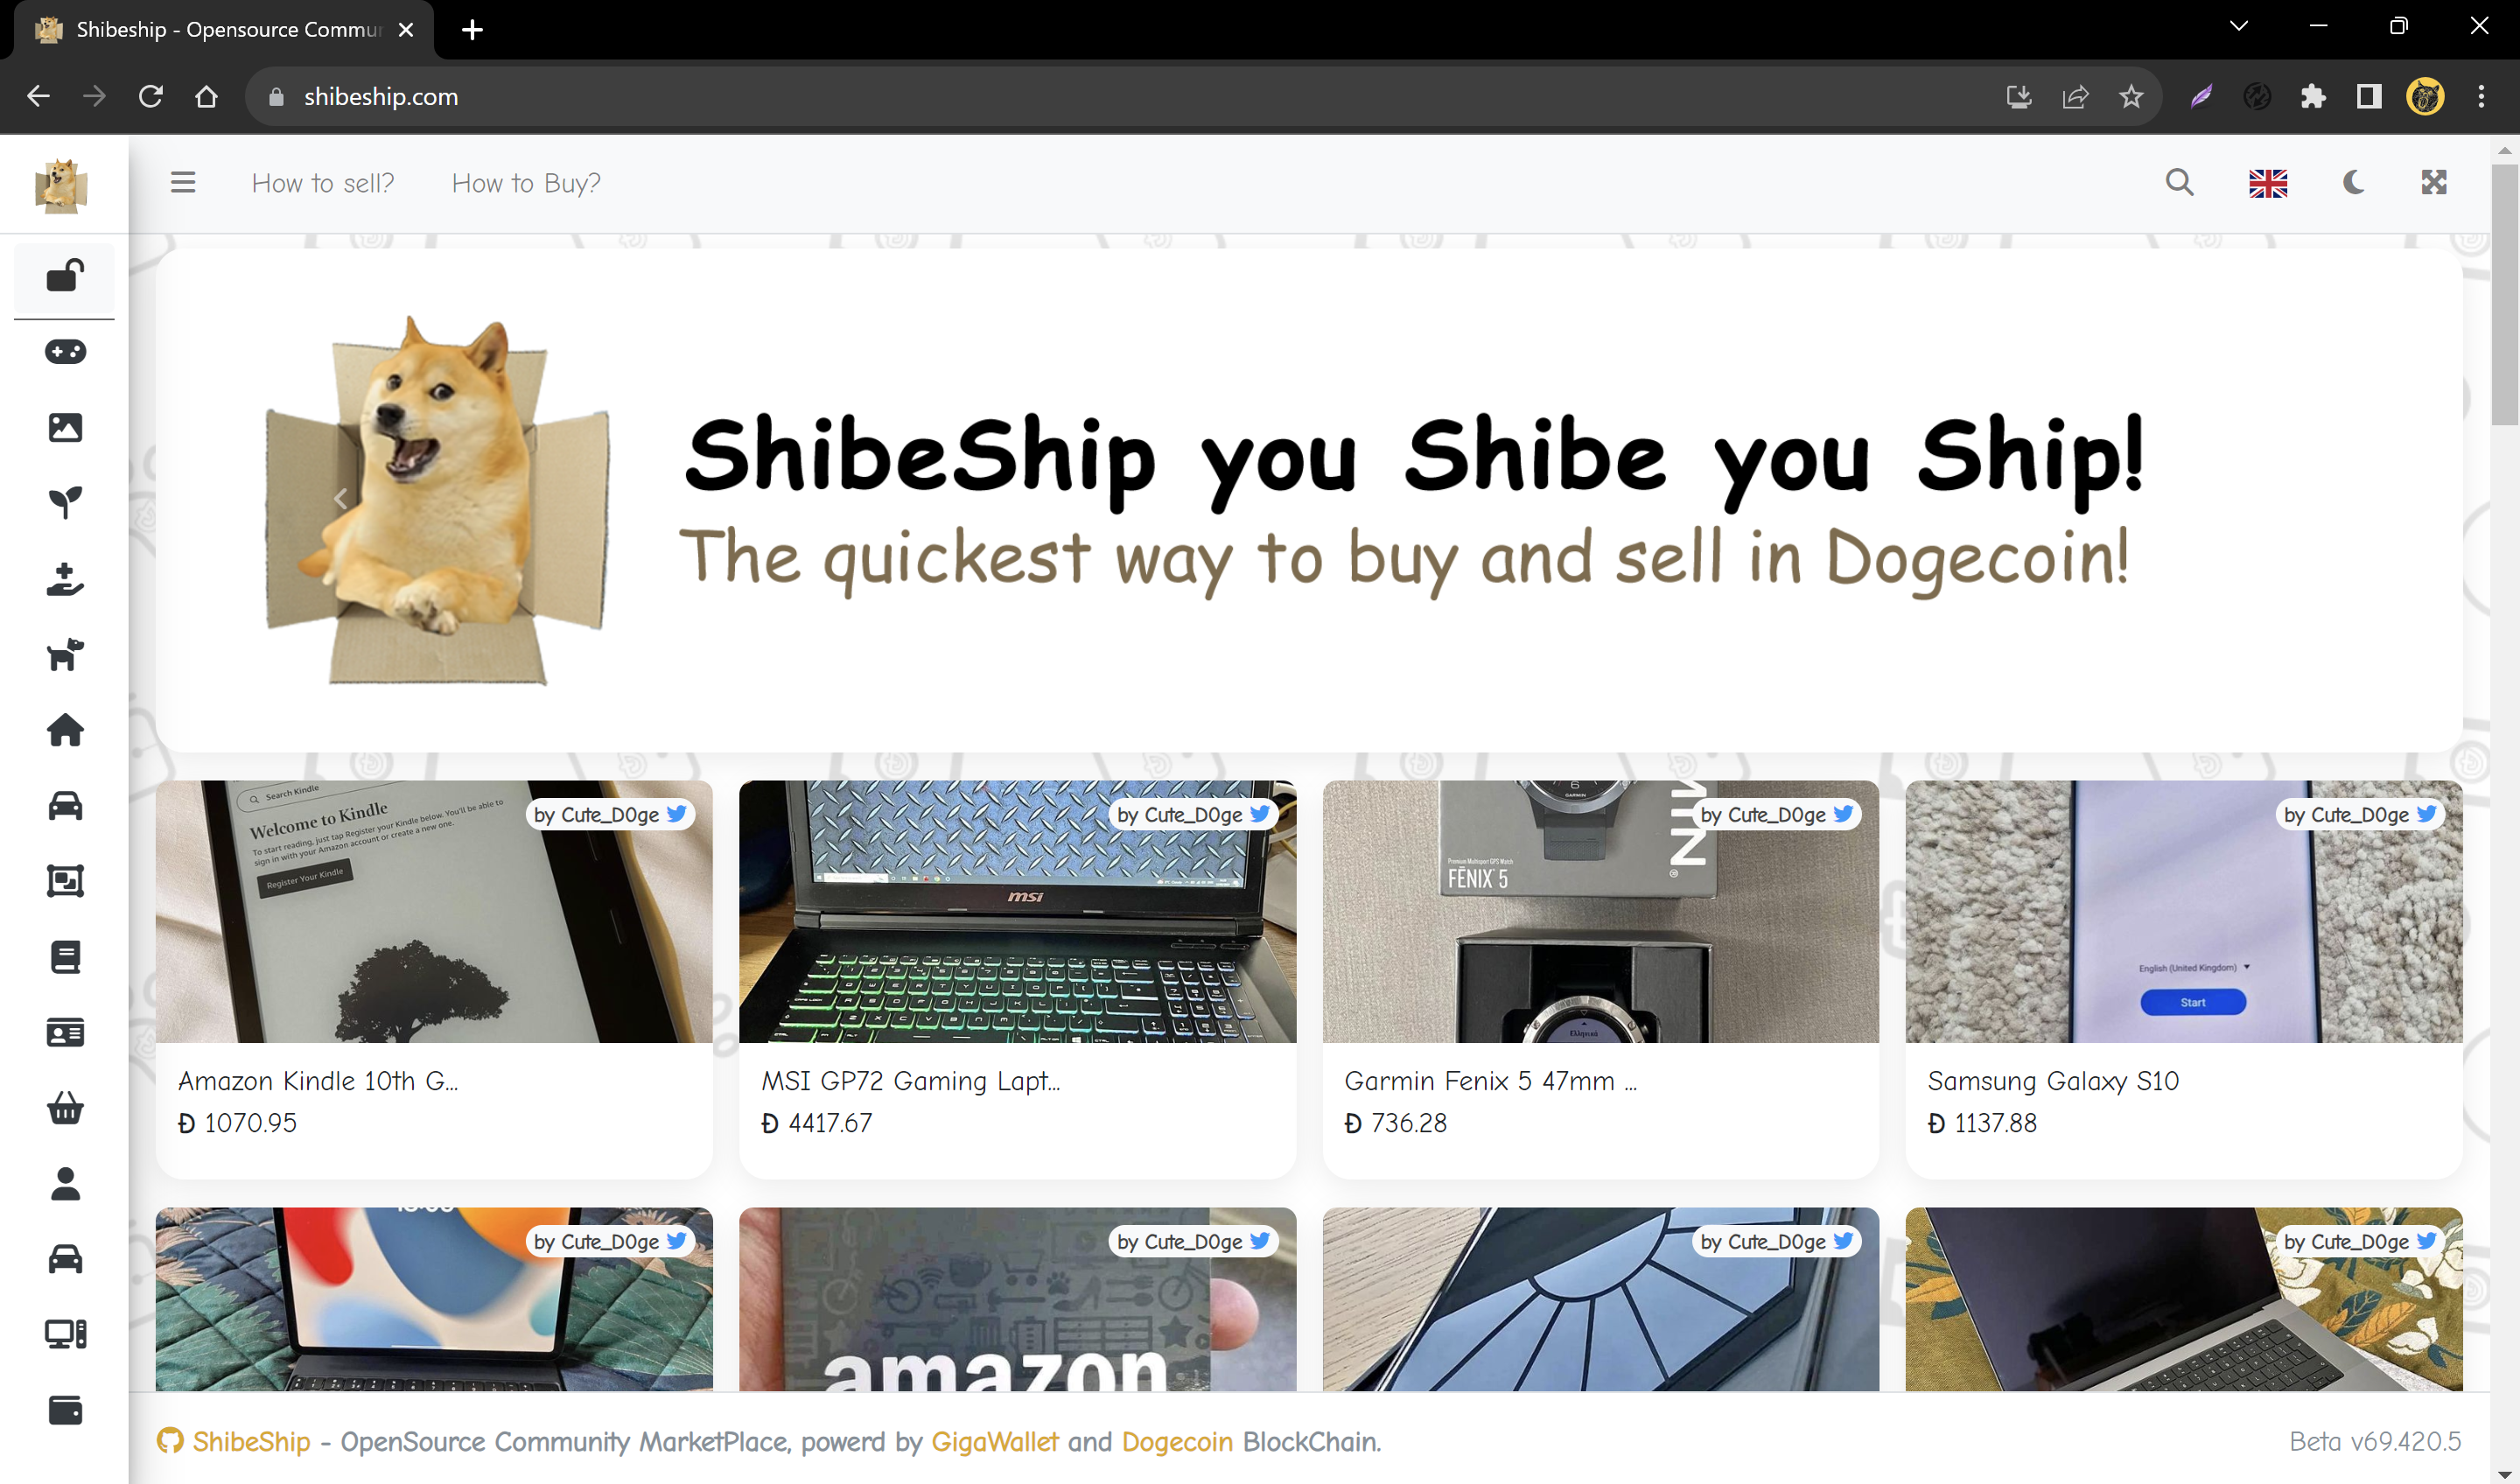 ShibeShip